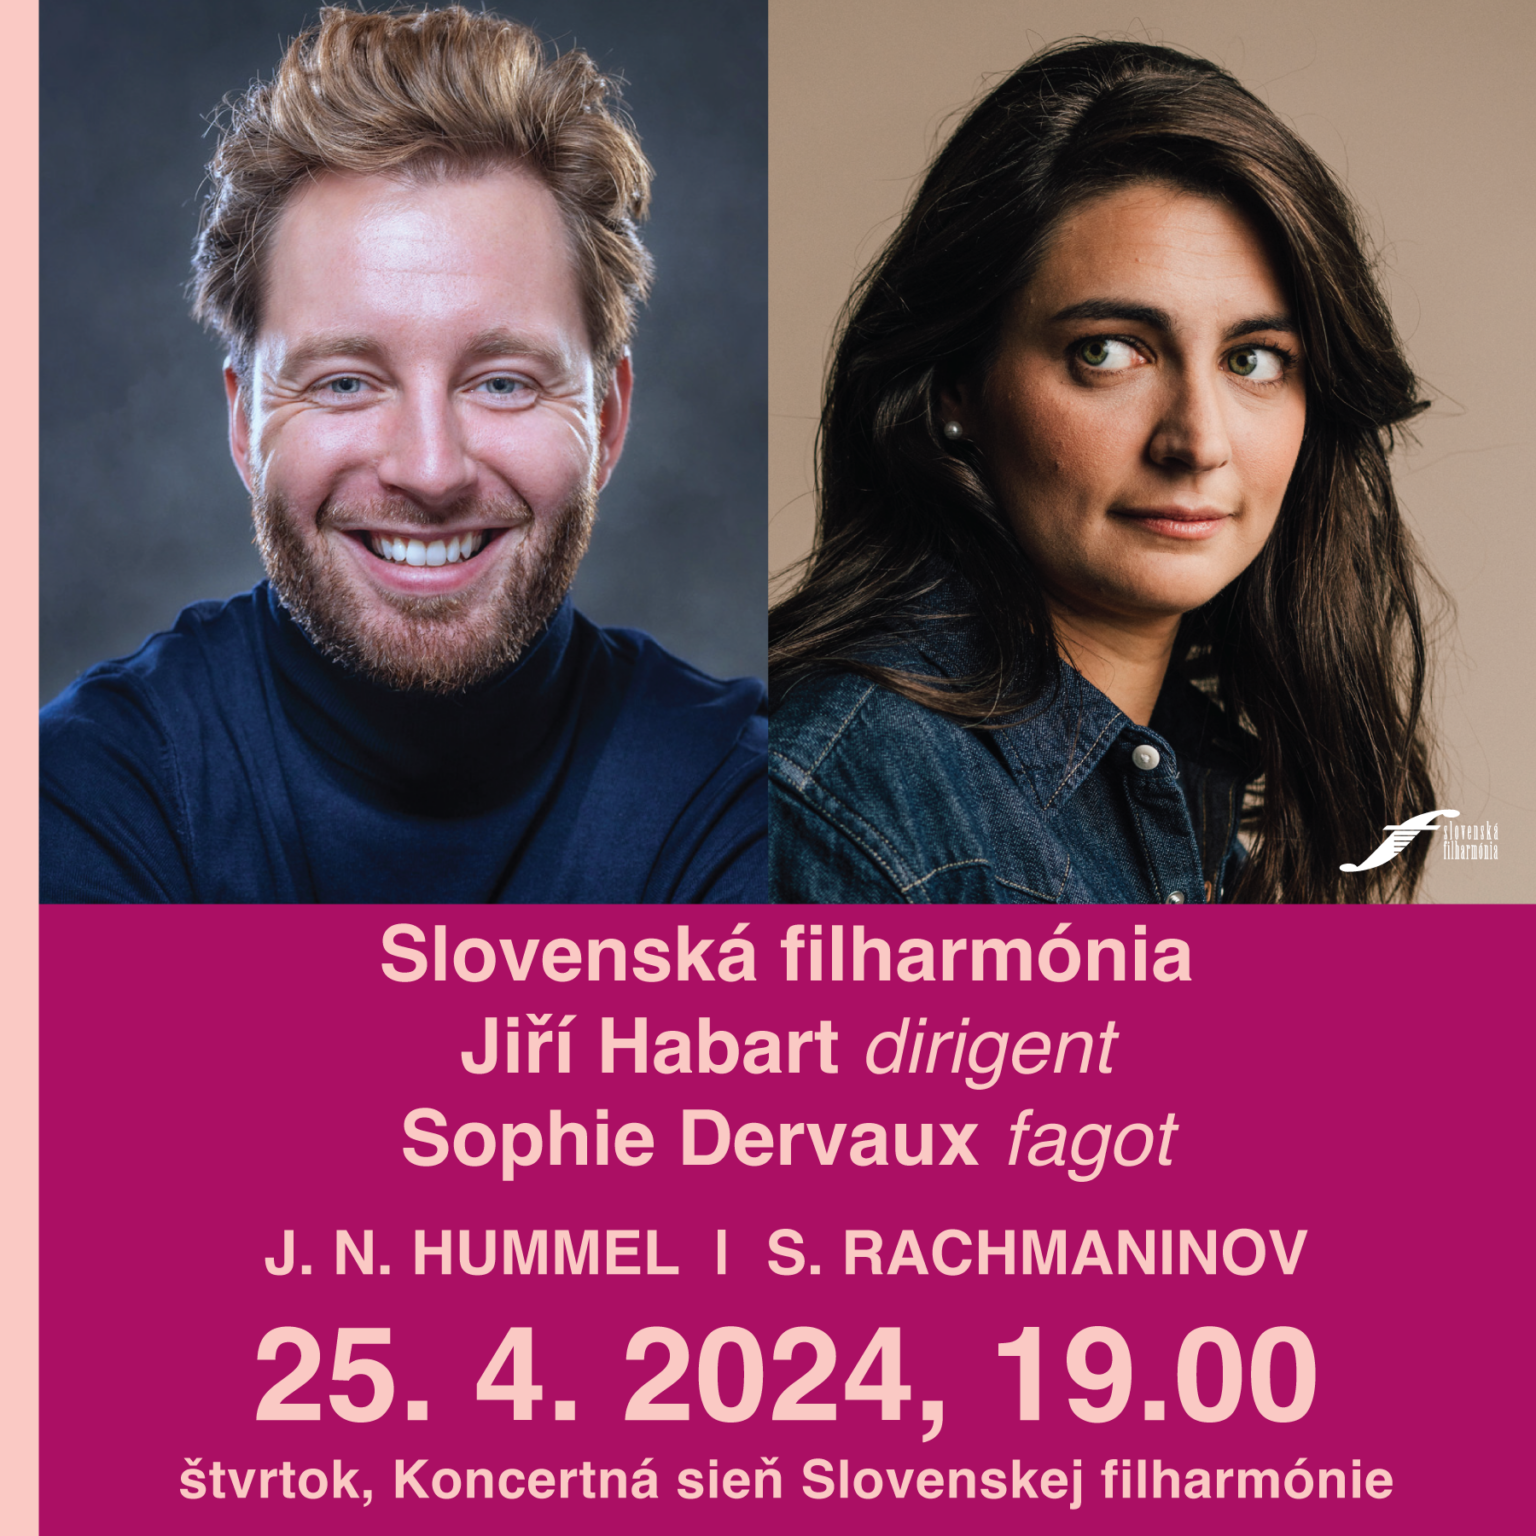 Jiří Habart a Sophie Dervaux v Slovenskej filharmónii